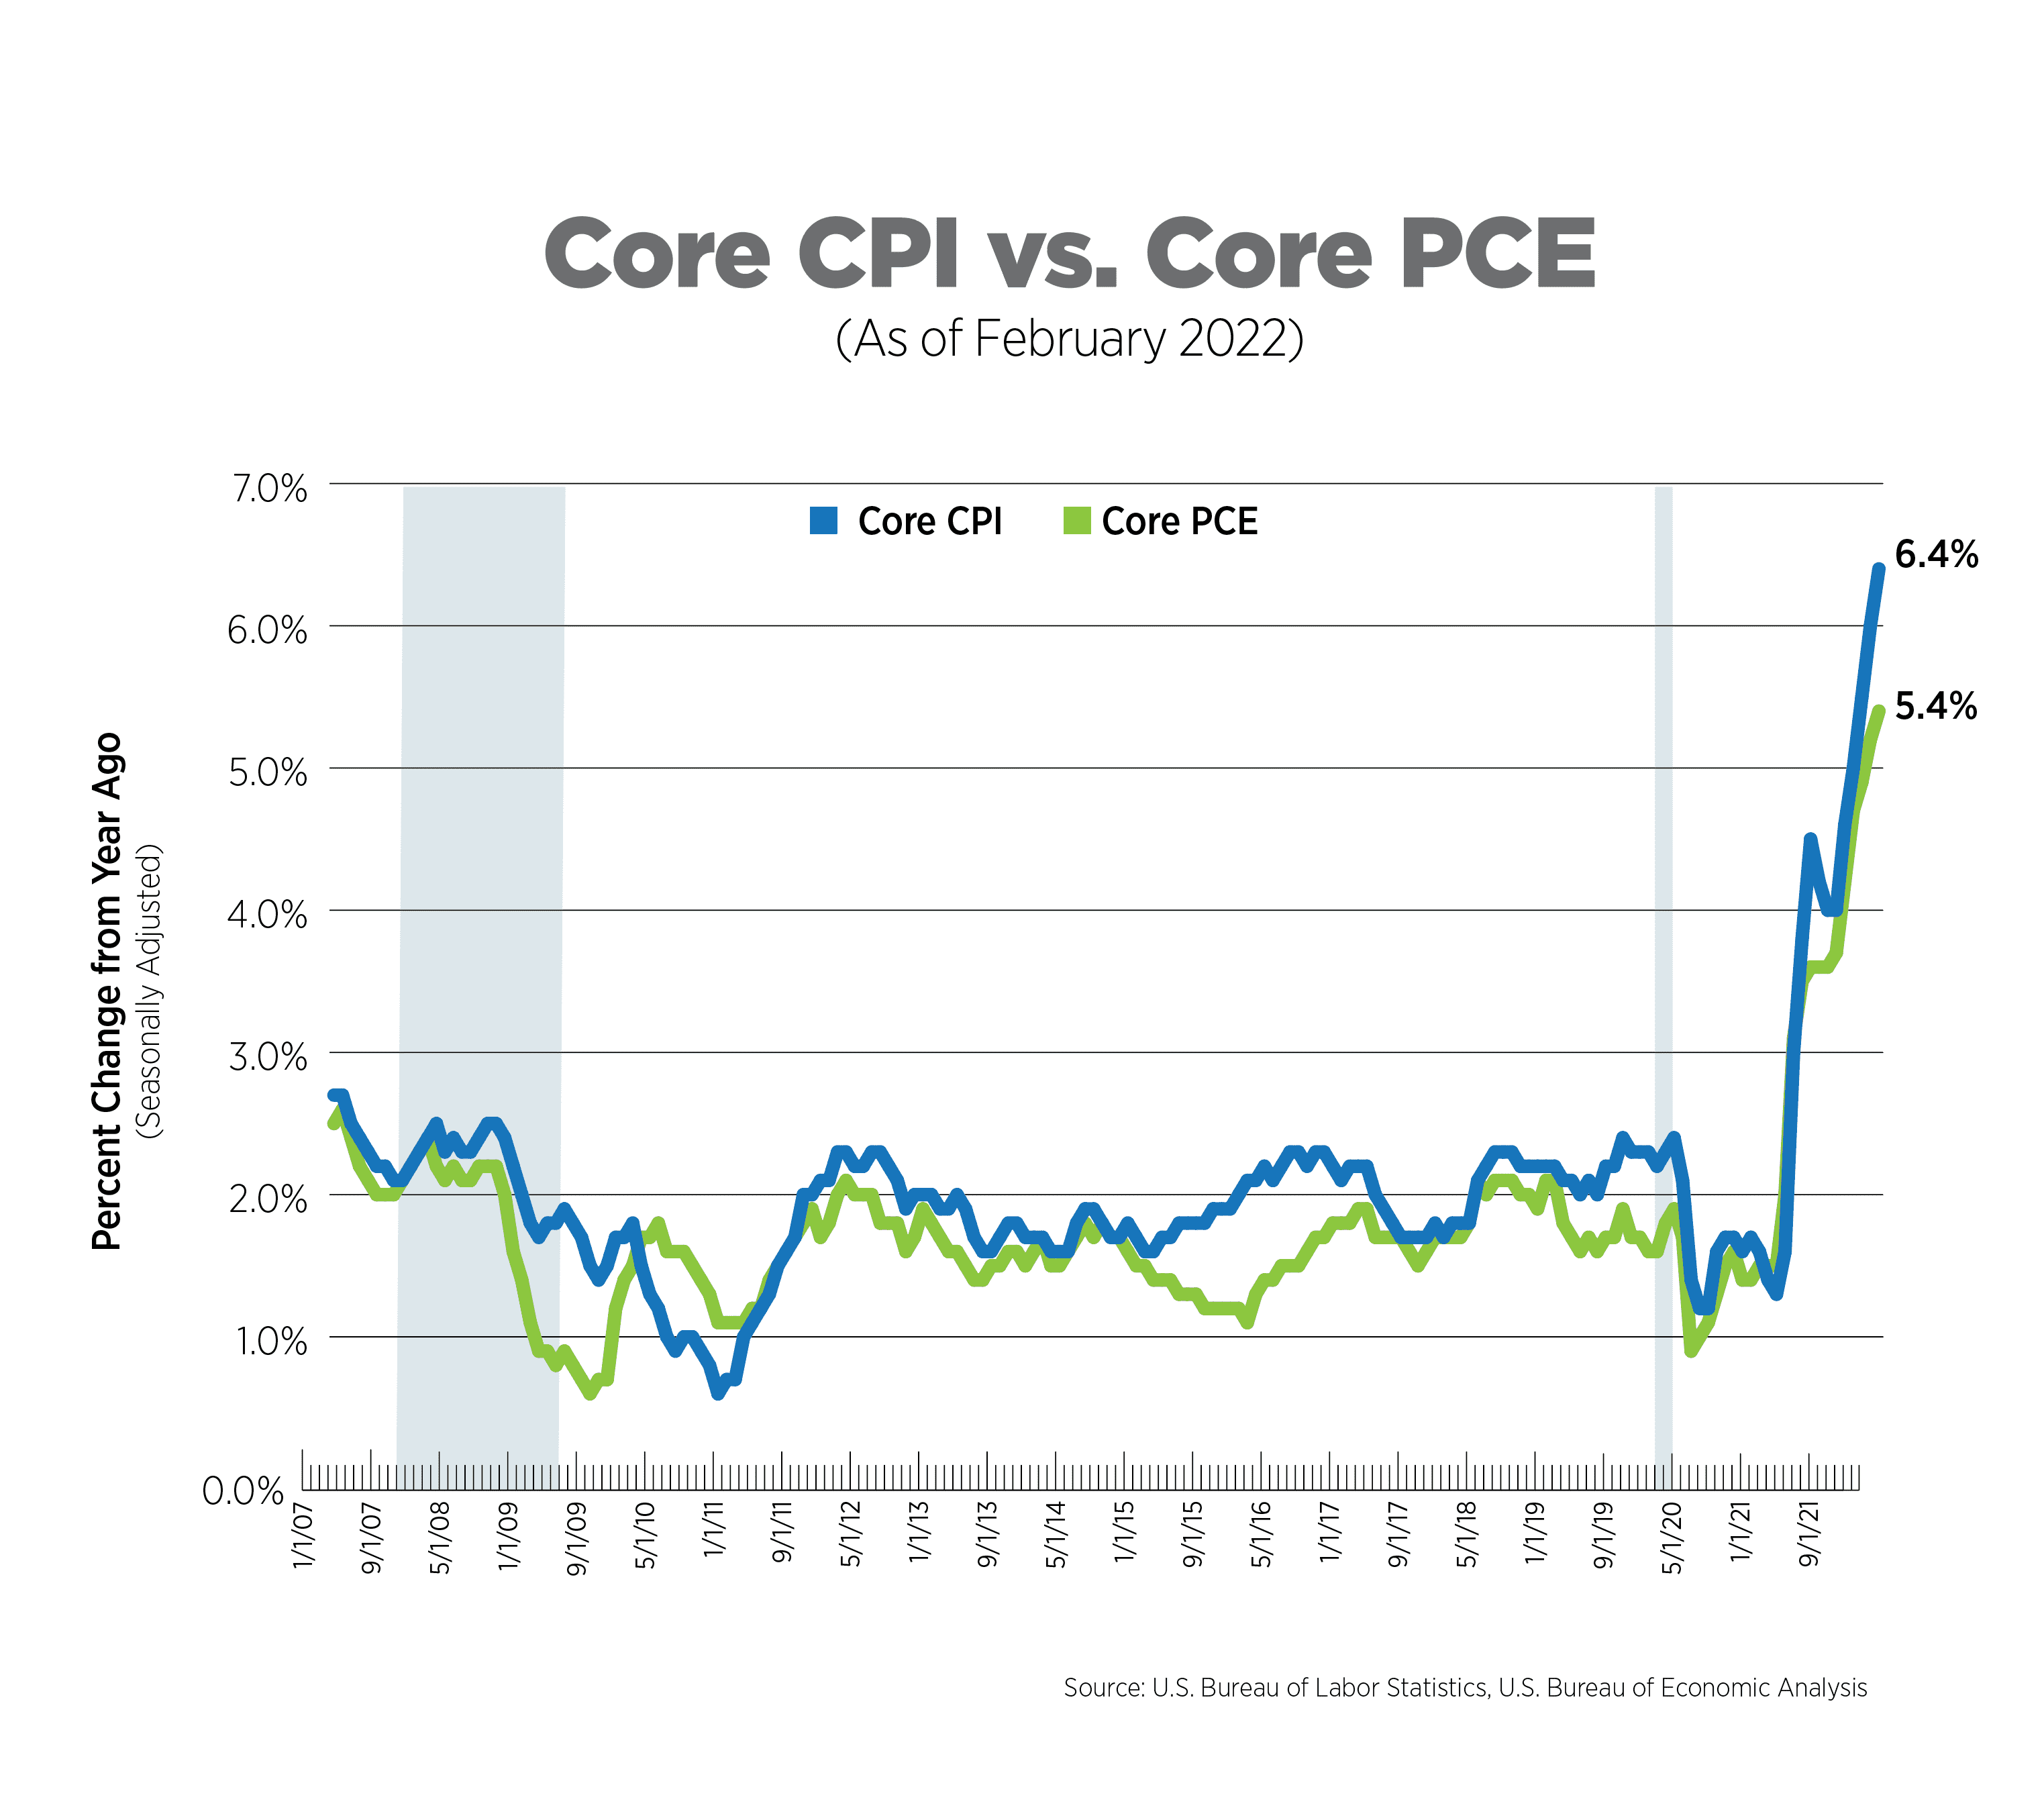 core cpi vs core pce, as of feb 2022